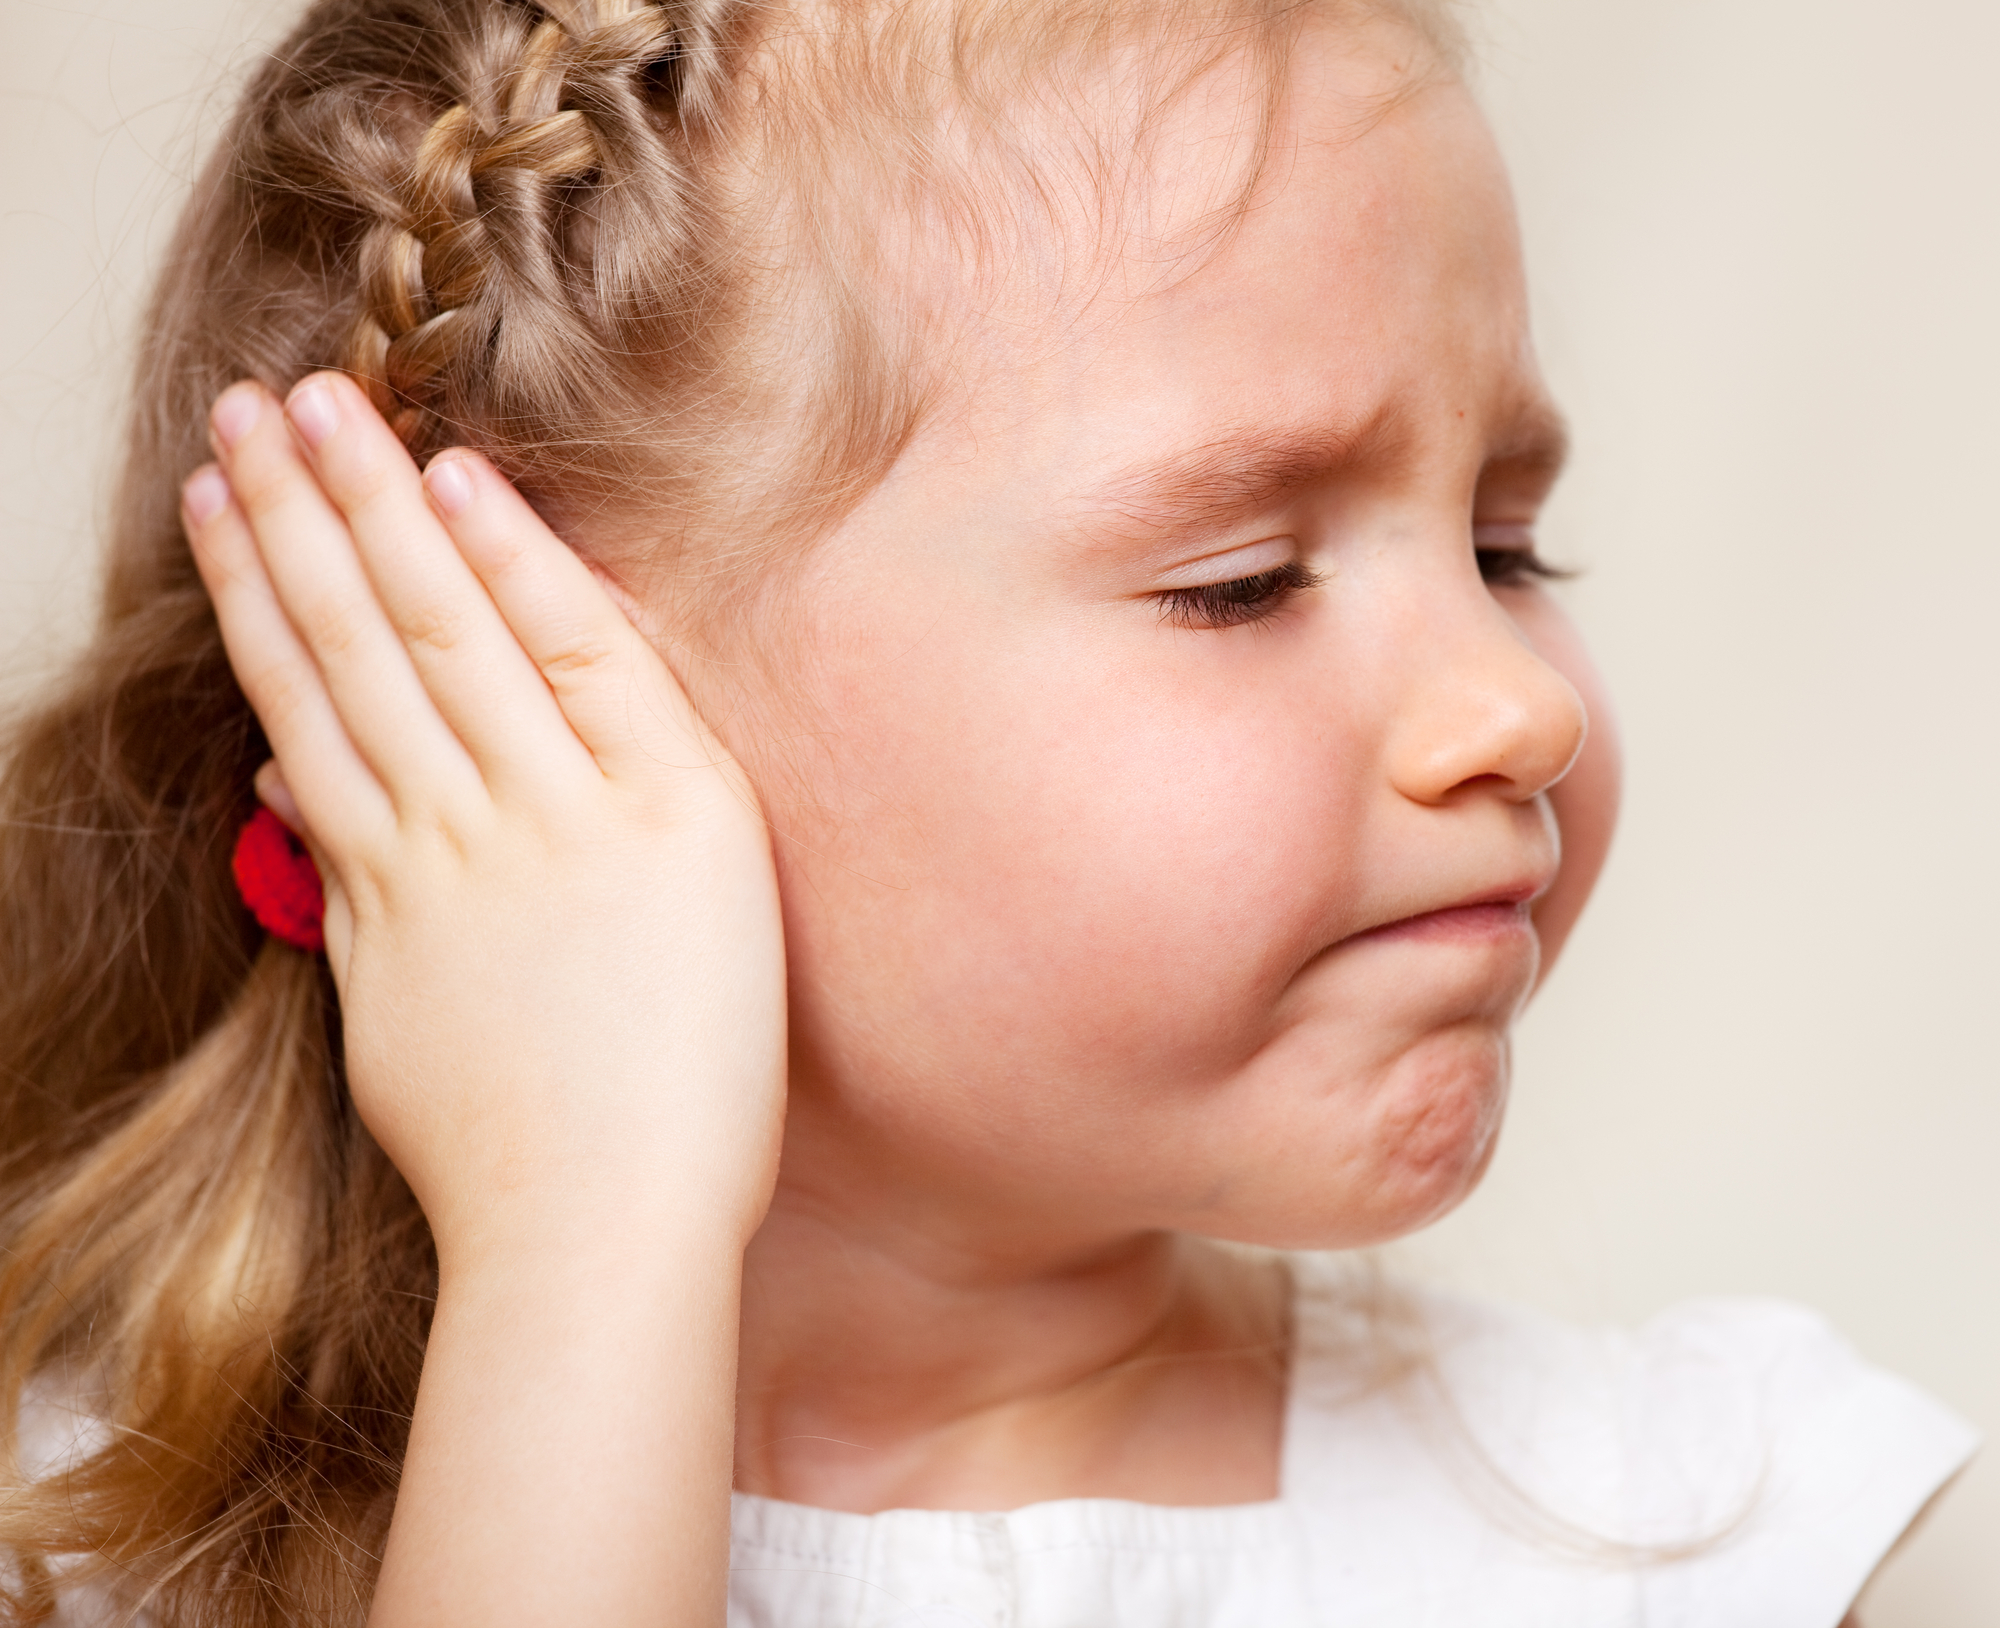 Що можна капати у вухо дитині?